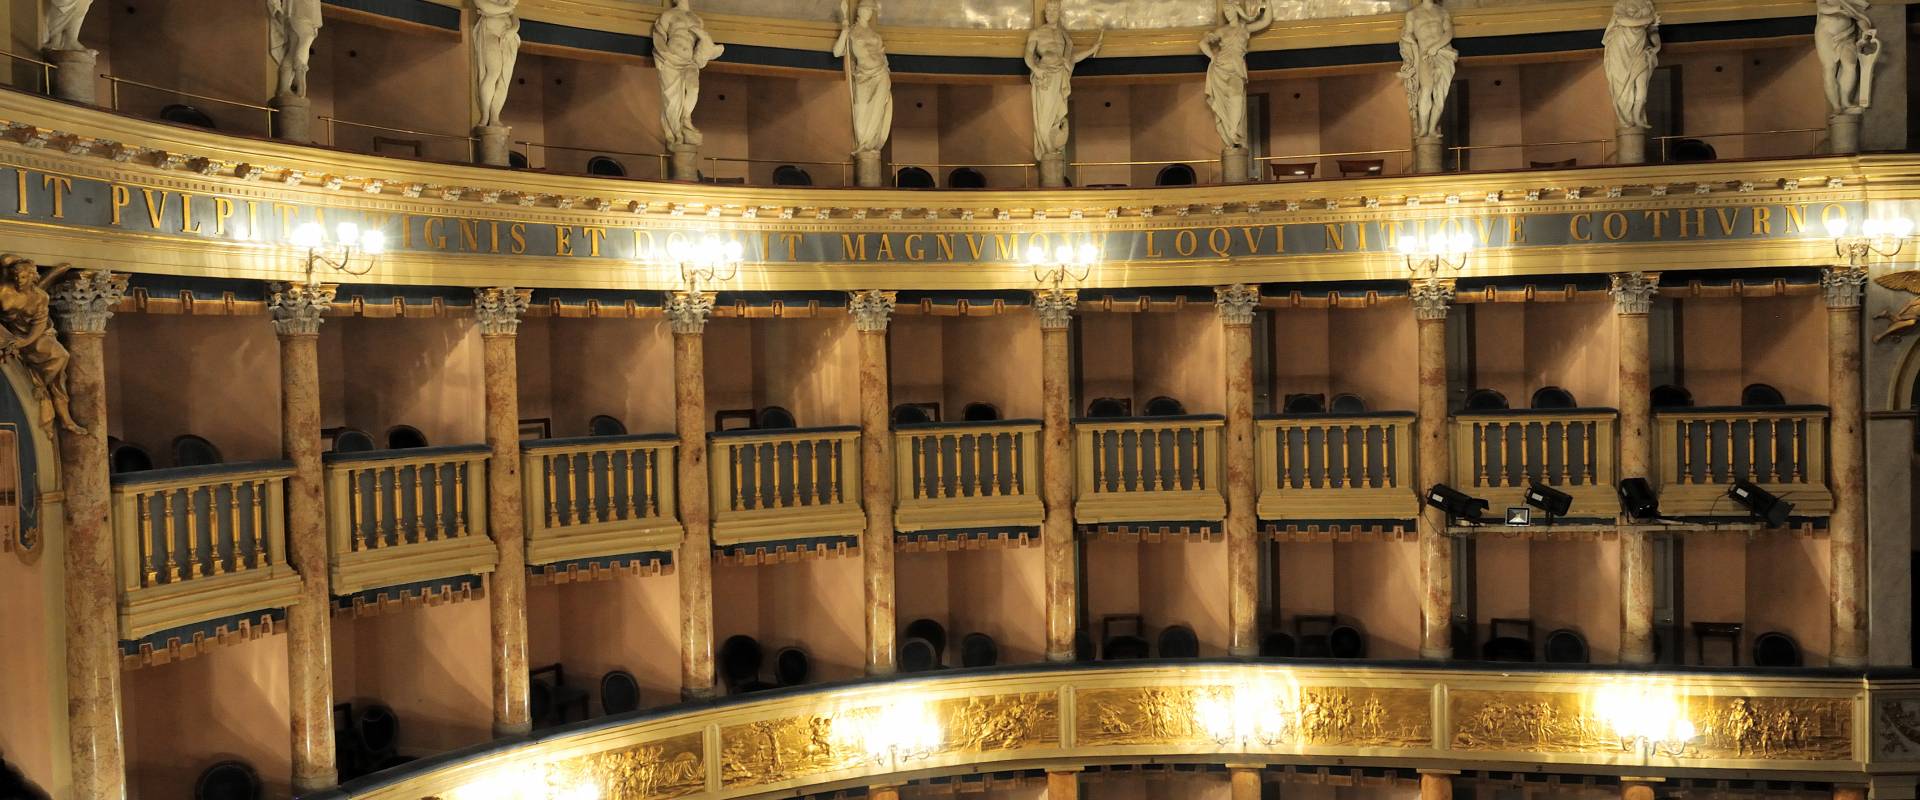 Teatro Comunale Angelo Masini - Comune di Faenza 06 foto di Lorenzo Gaudenzi